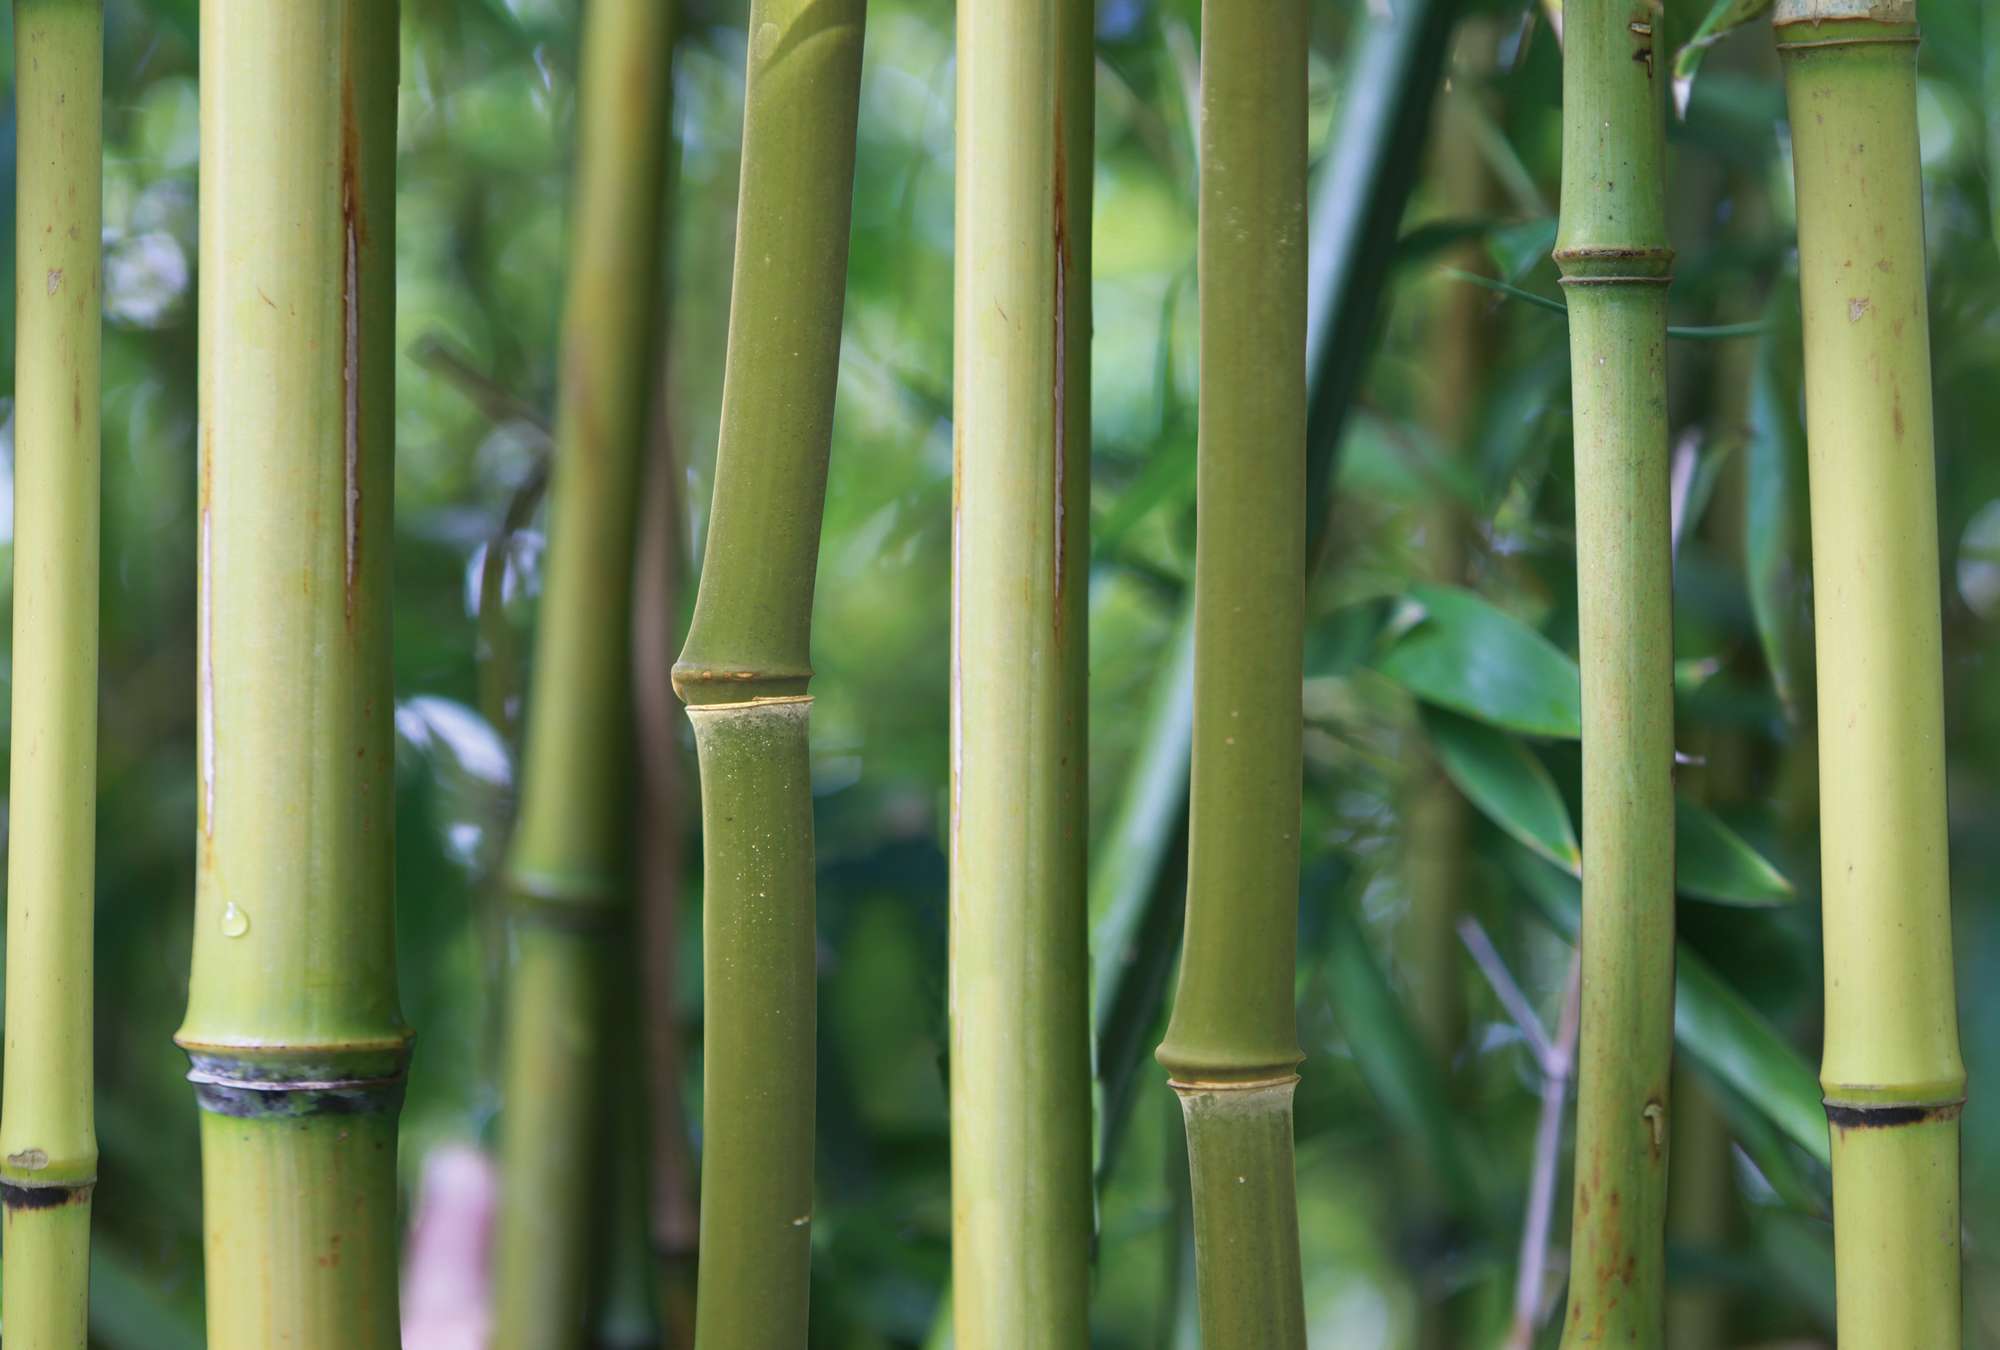             Papel pintado de bambú Bosque de bambú con vista detallada
        